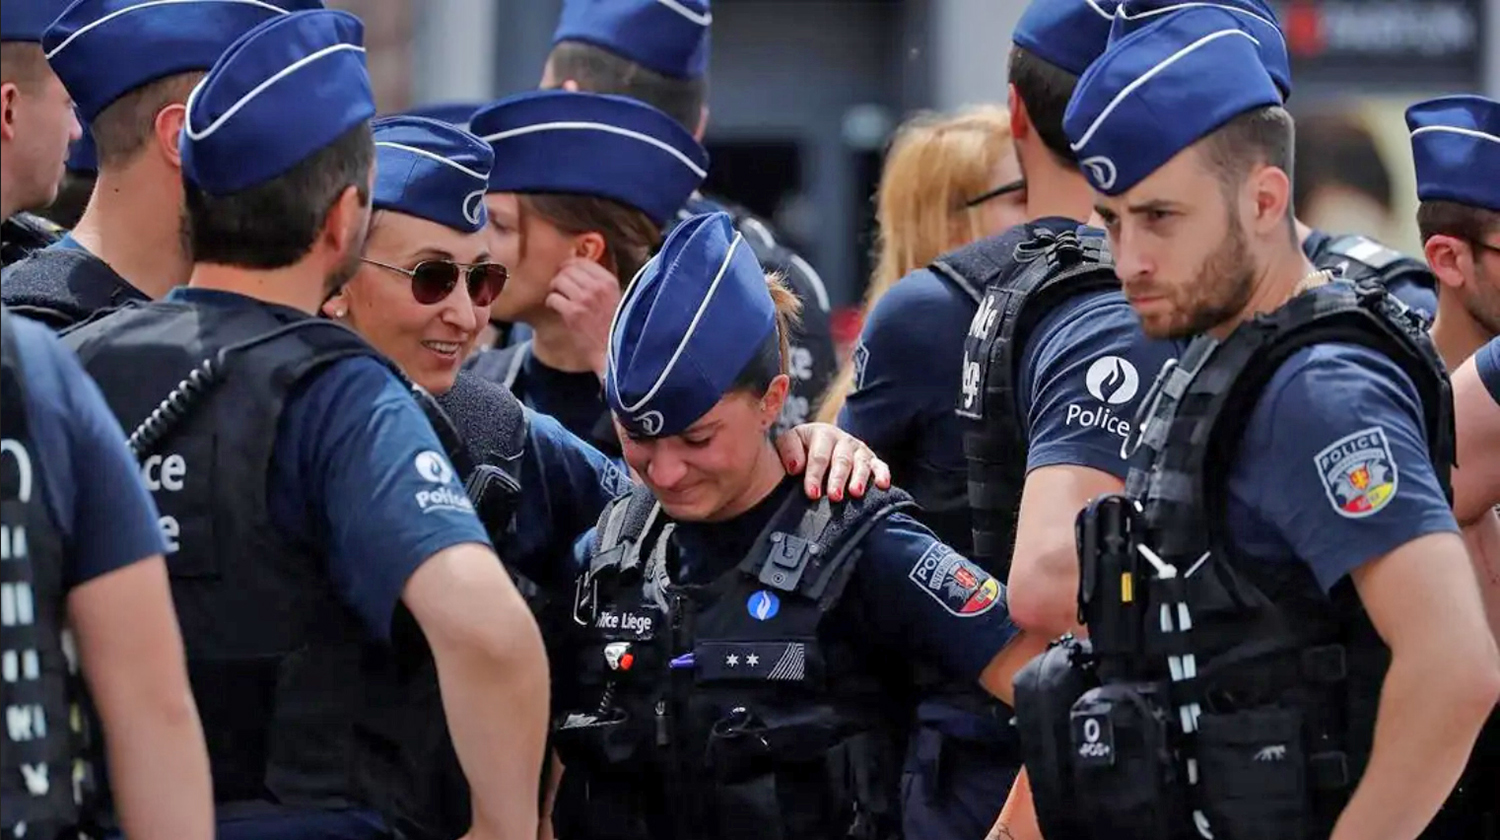 Európai rendőr egyenruha<br />Belgium<br />forrás: english.alarabiya.net